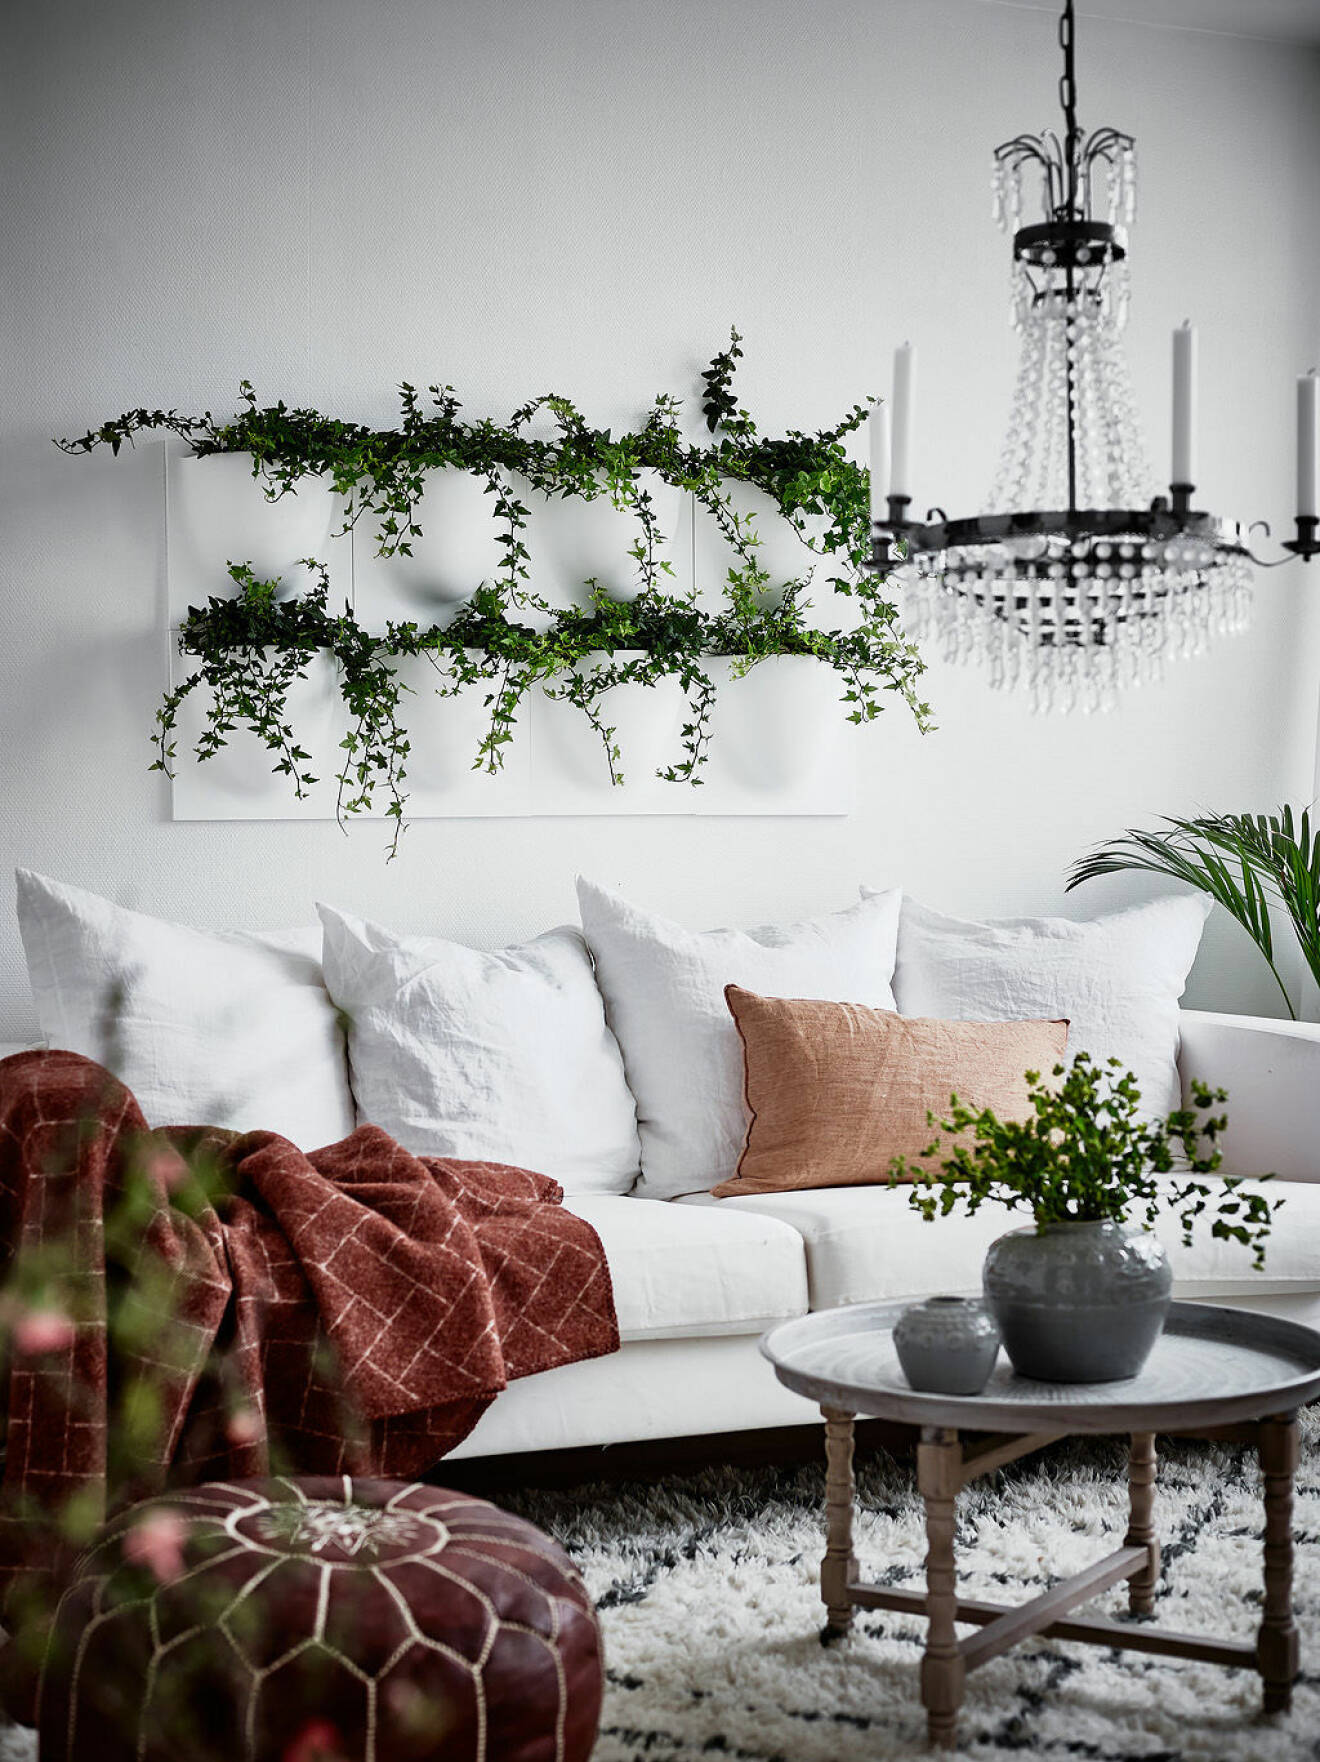 Växter som hänger på väggarna och kompletterar heminredningen